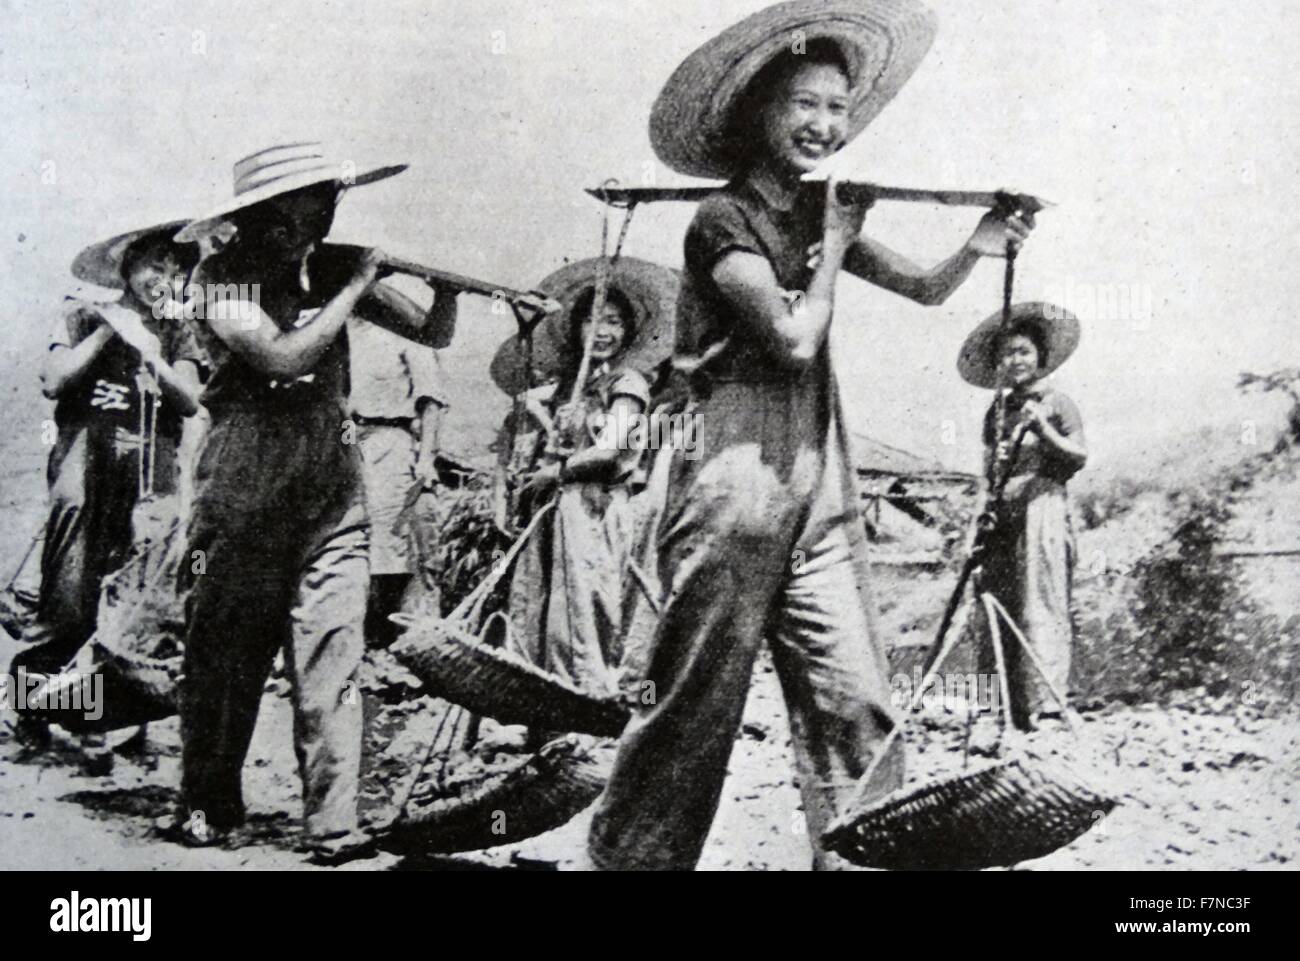 Photographie de certains des élèves de sexe féminin d'Linkiang College de préparer le nouveau jeu après avoir été transférés de Shanghai à Chungking. Datée 1941 Banque D'Images